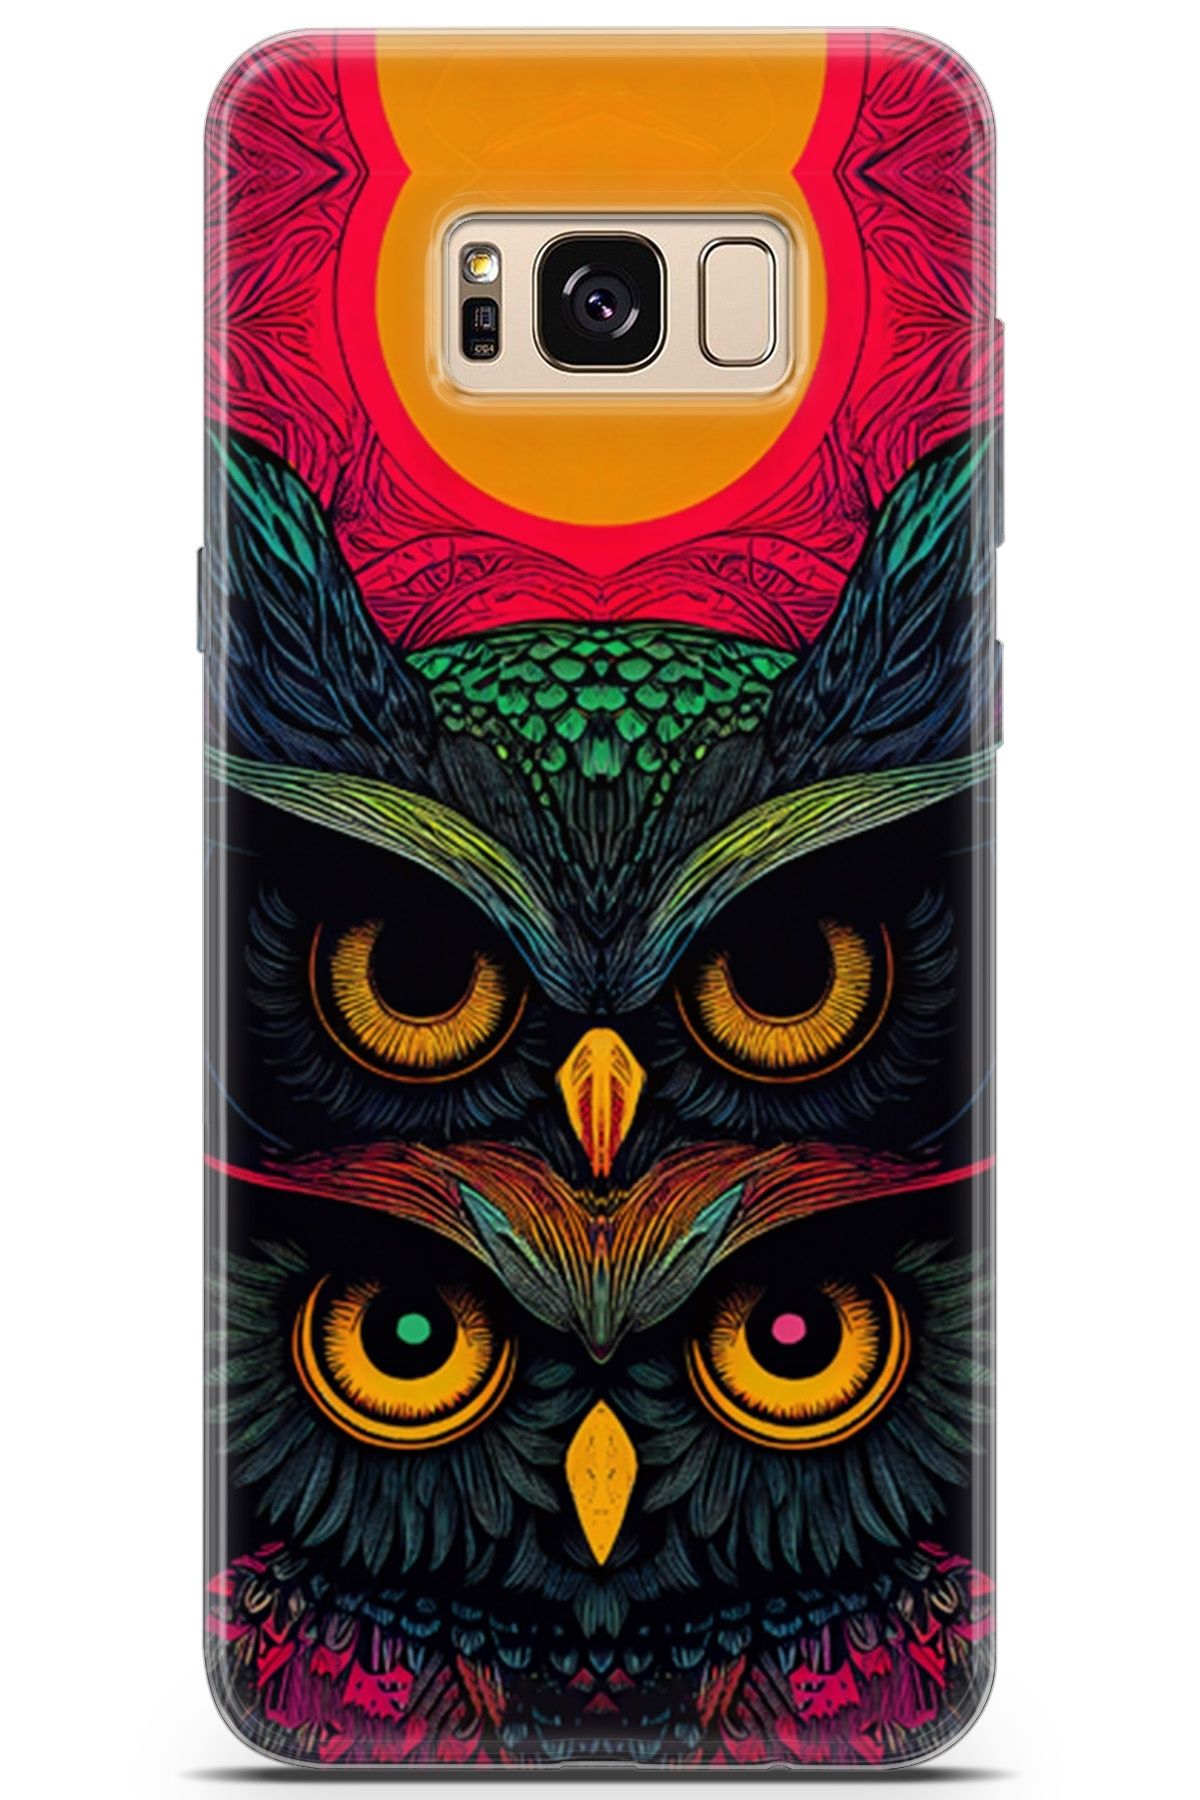 Lopard Samsung Galaxy S8 Uyumlu Kılıf Milano 16 Baykuş Mandalası Hediyelik Kılıf Sarı